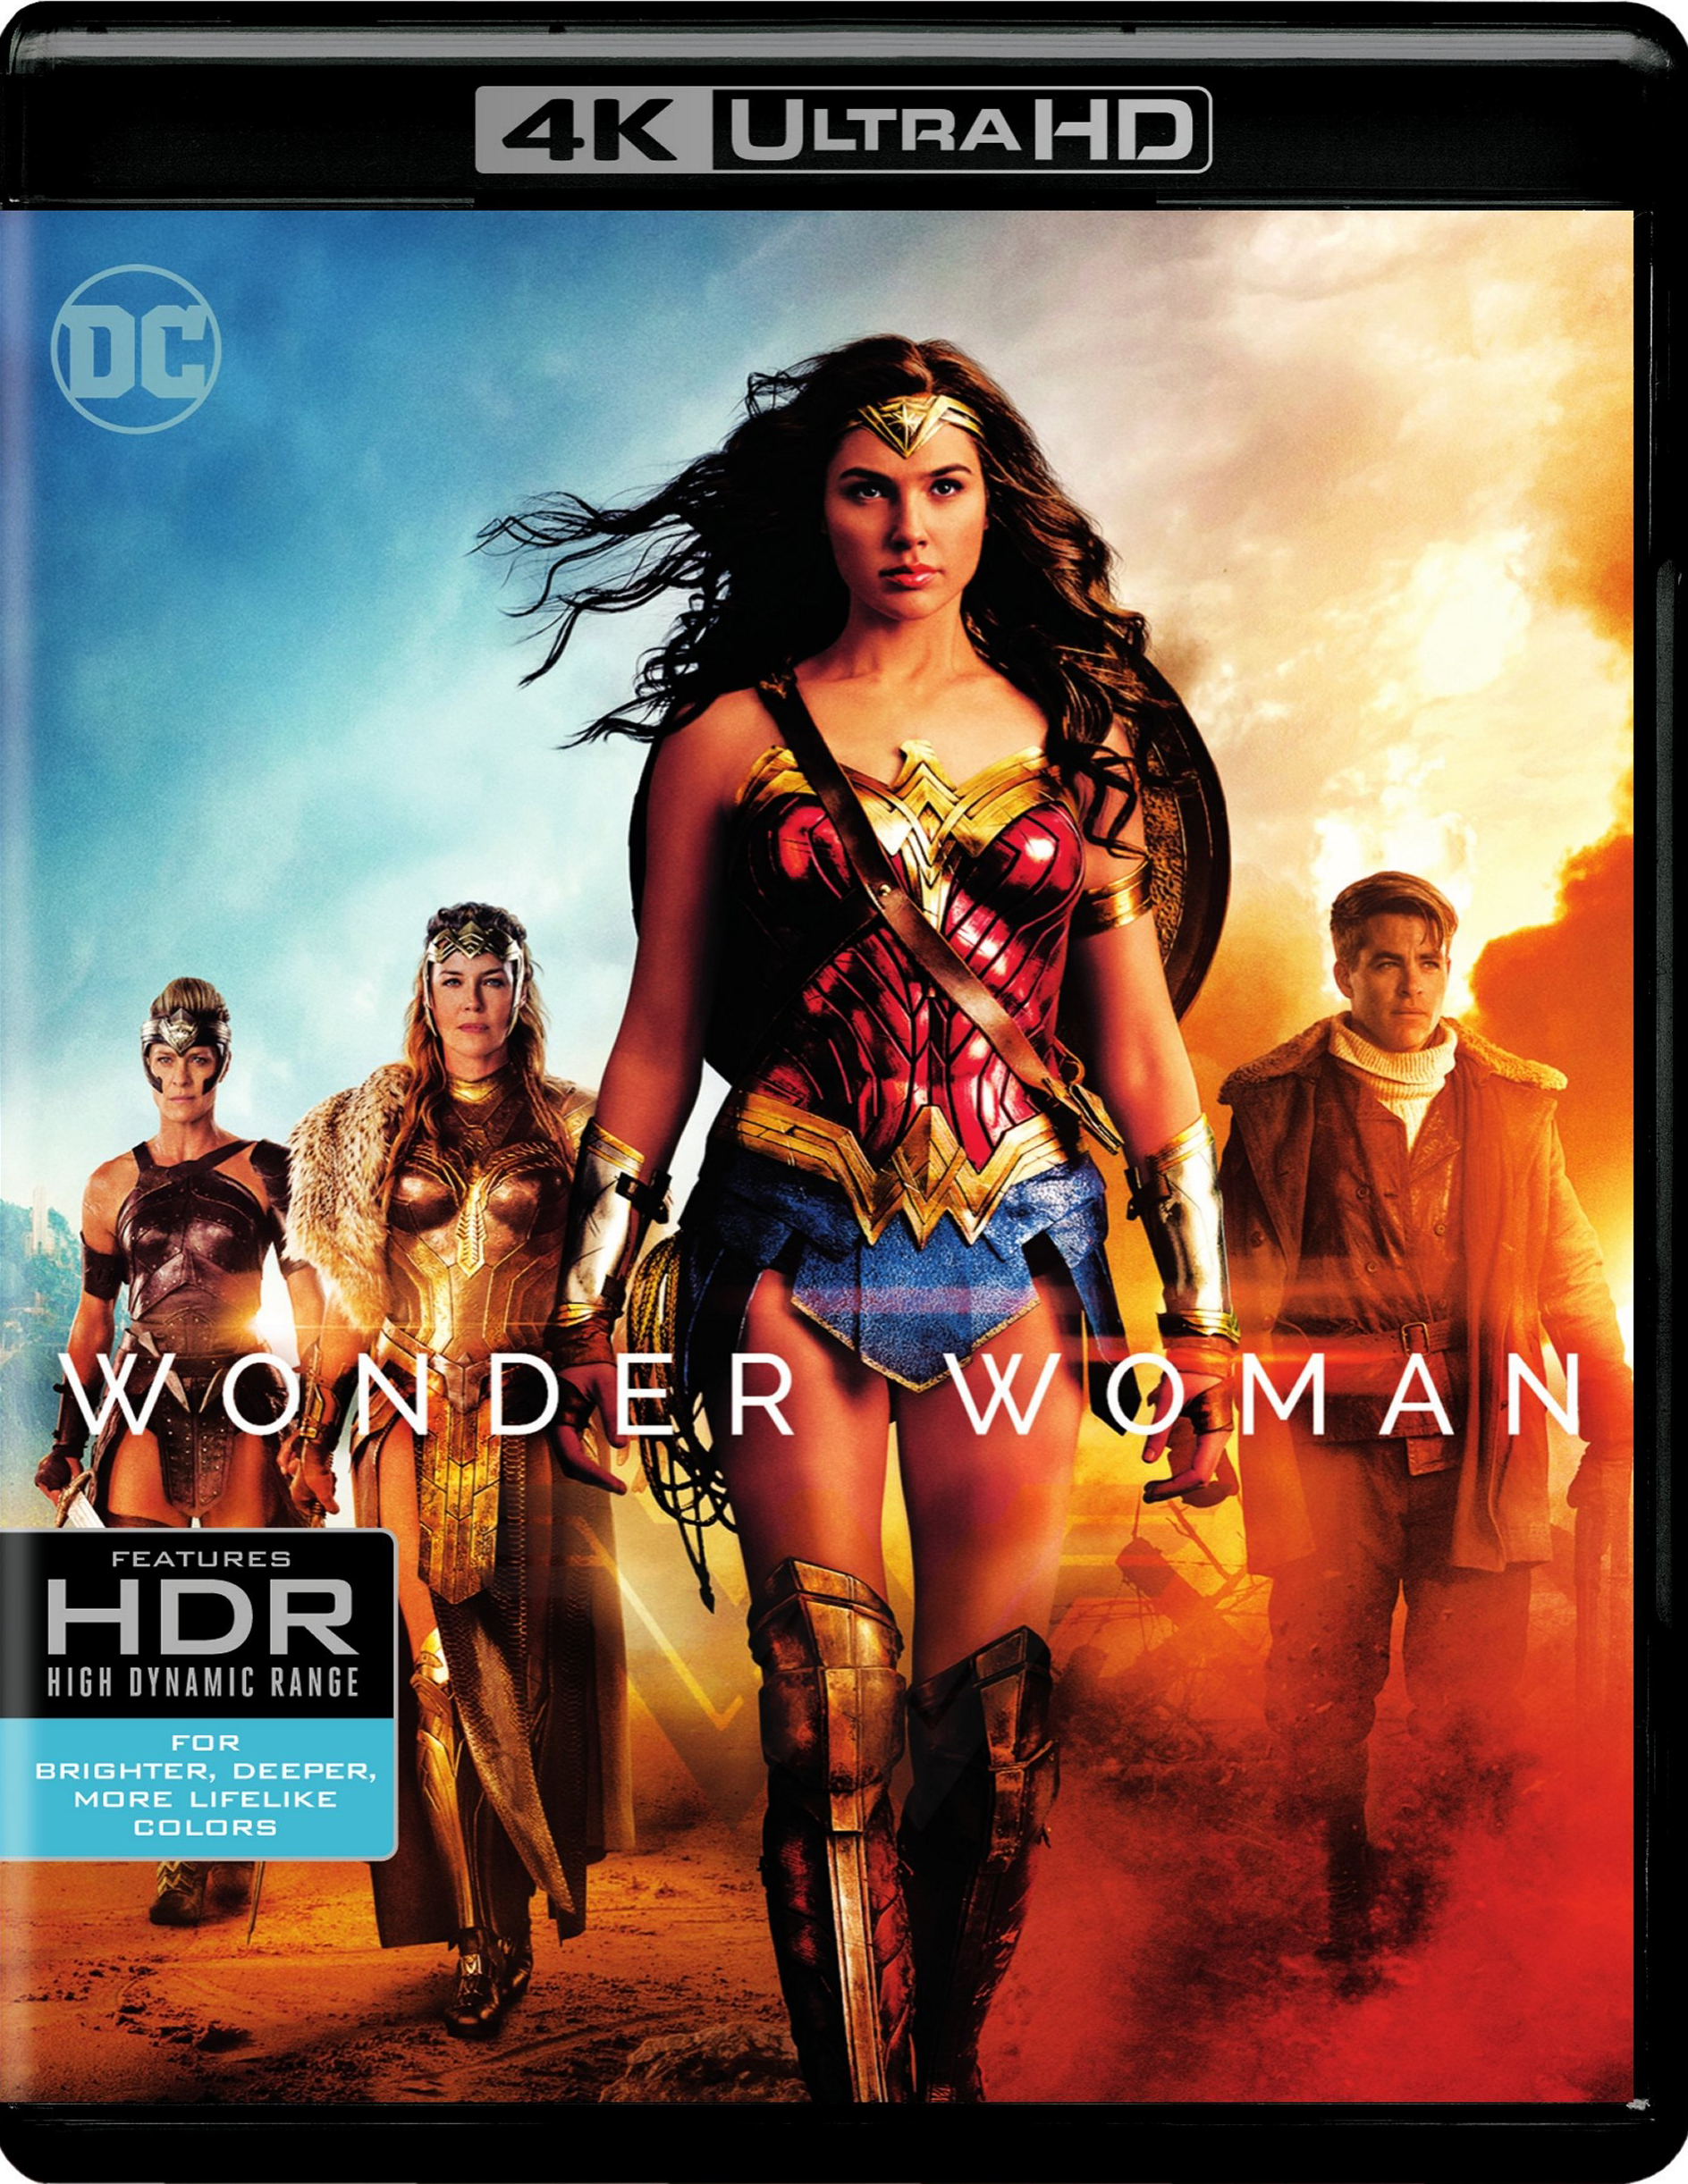 Wonder Woman [Blu-ray] [2017] - Best Buy